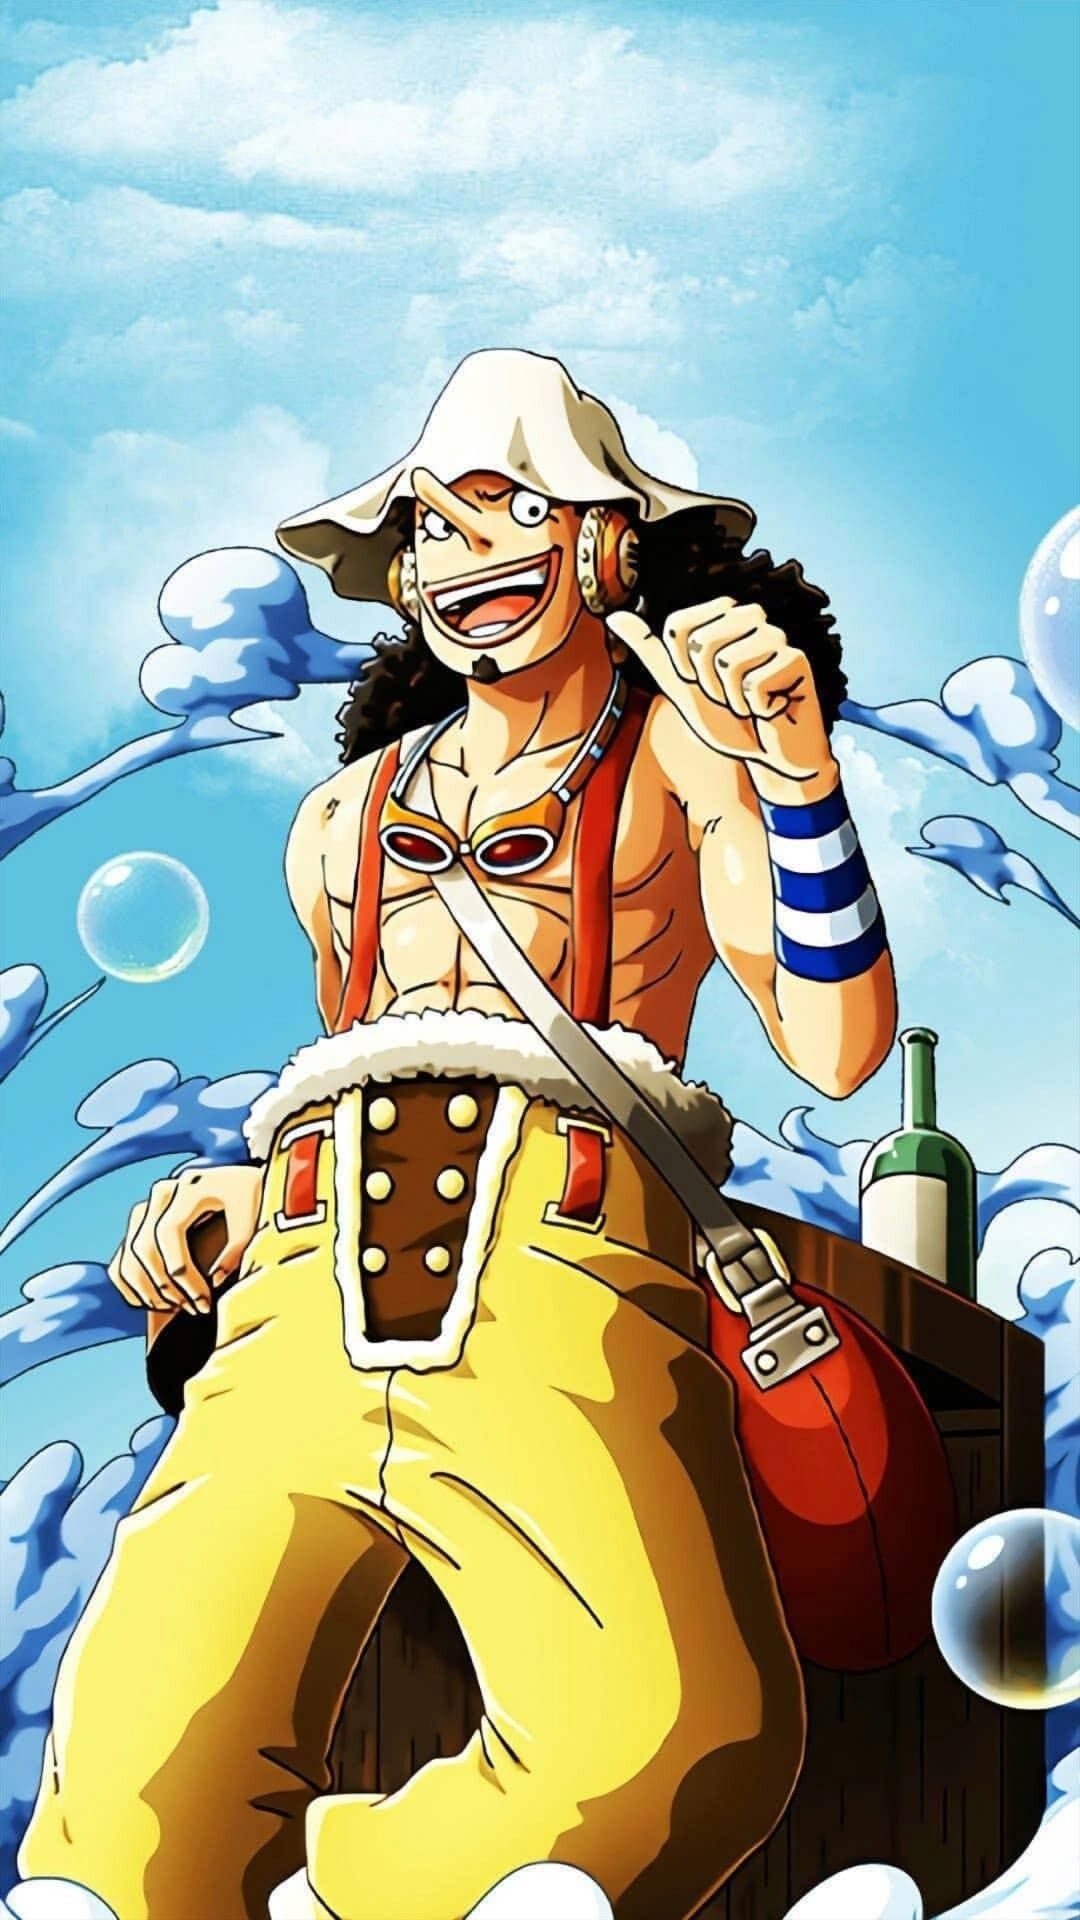 Tìm kiếm hình nền thú vị cho điện thoại hay máy tính của bạn? Hãy chọn hình nền Usopp trong One Piece - nhân vật vui tính với trái tim và tài năng phi thường!